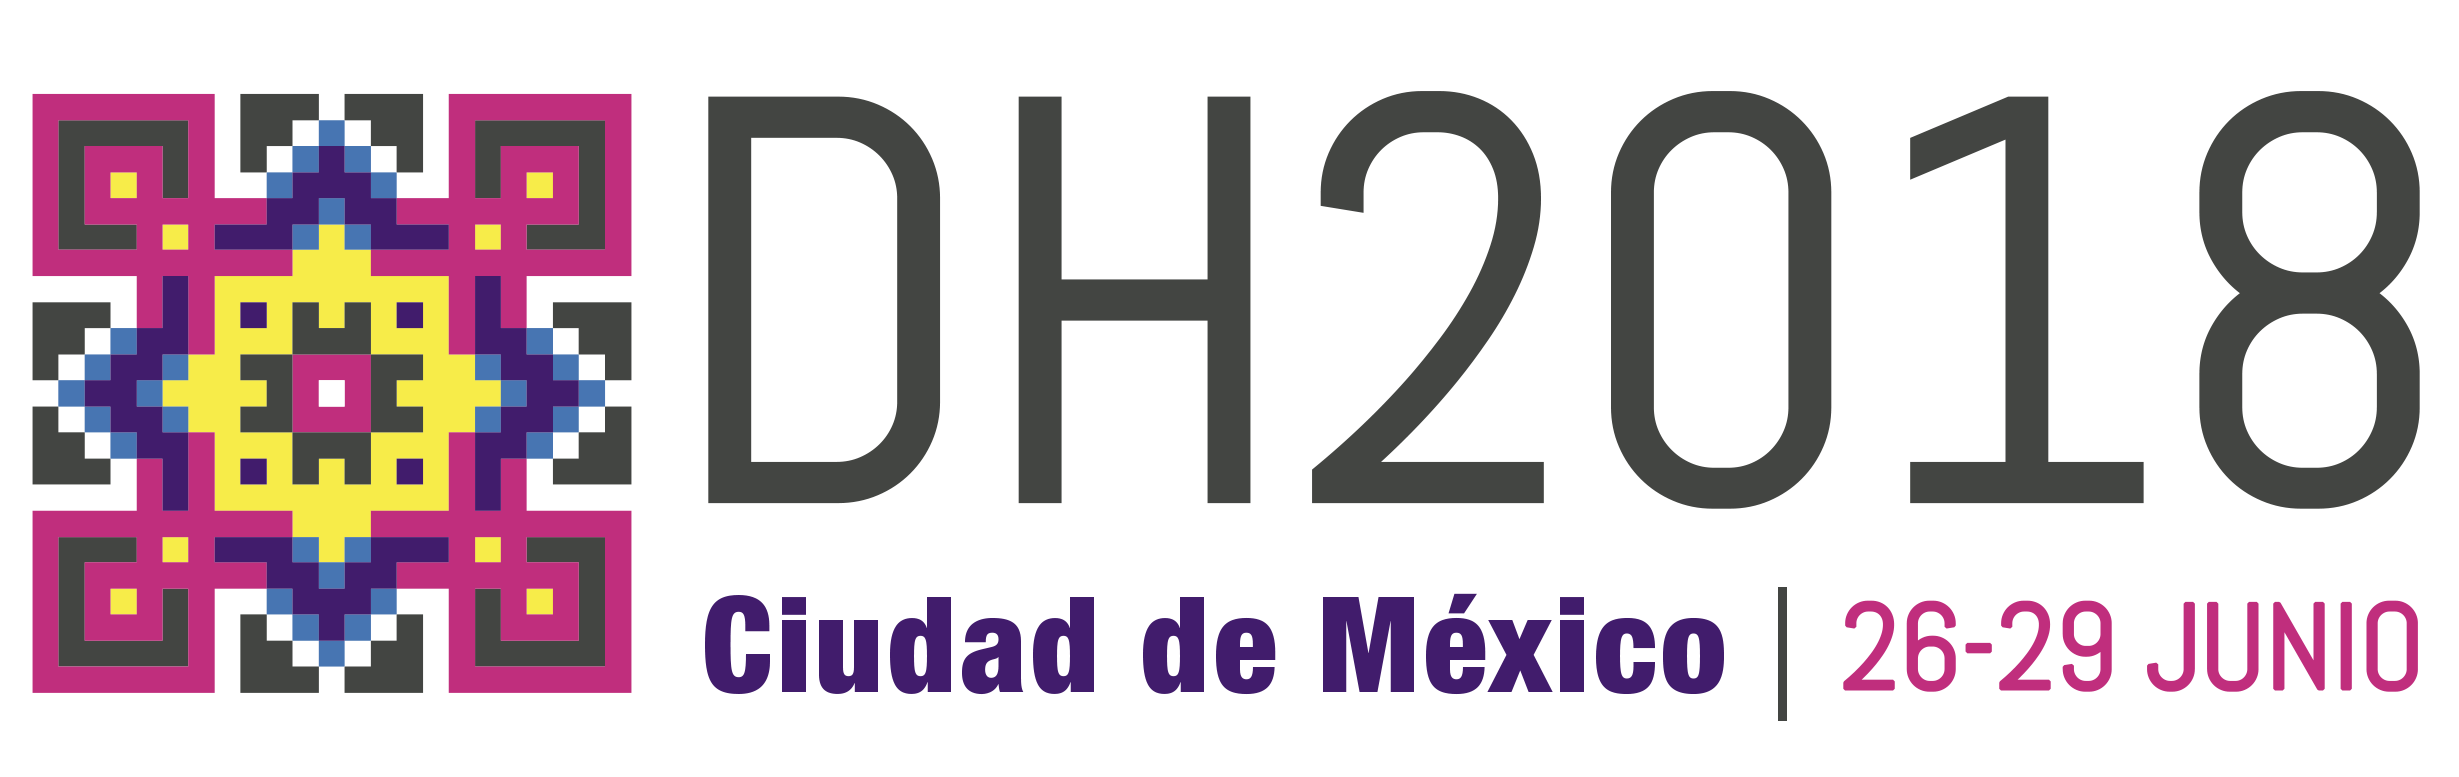 En Junio Del Próximo Año Se Llevará A Cabo En La Ciudad De México Uno De Los Eventos Más Relevantes En El Mundo De Las Humanidades Digitales (Hd), Hdpng.com  - Mexico, Transparent background PNG HD thumbnail